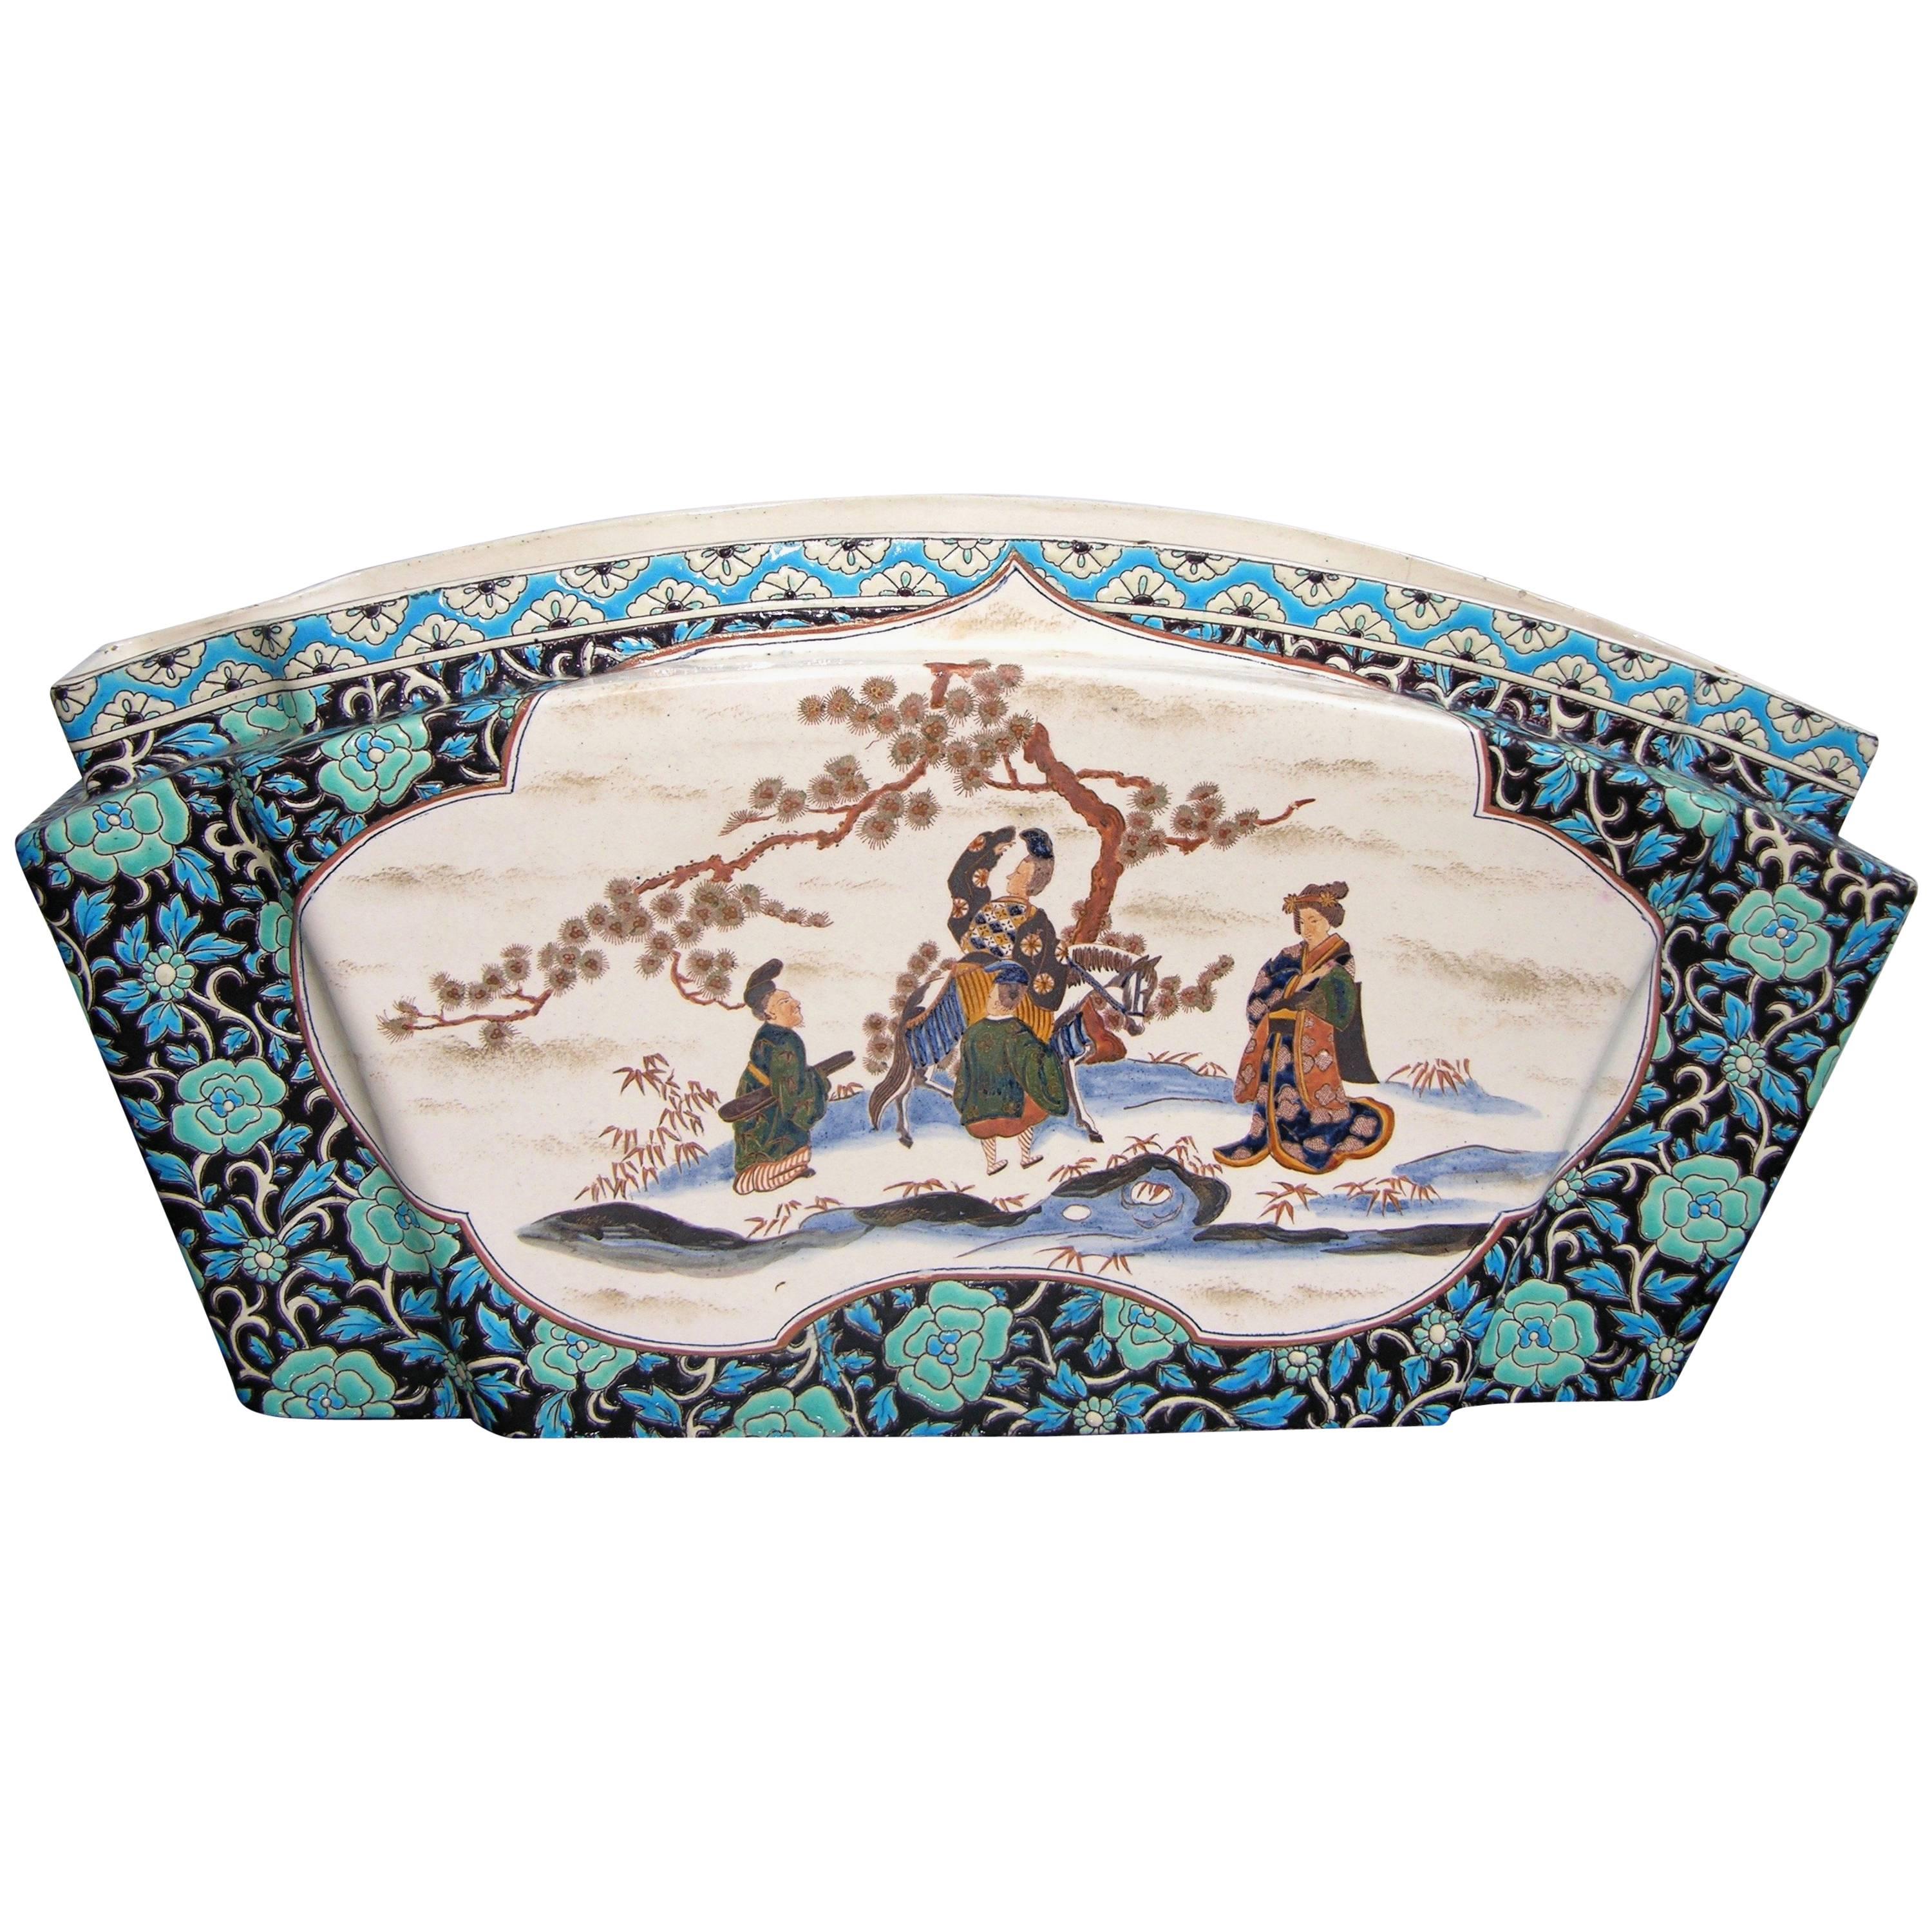 Vase de centre de table français de style Longwy de 1875, décor asiatique par Gien